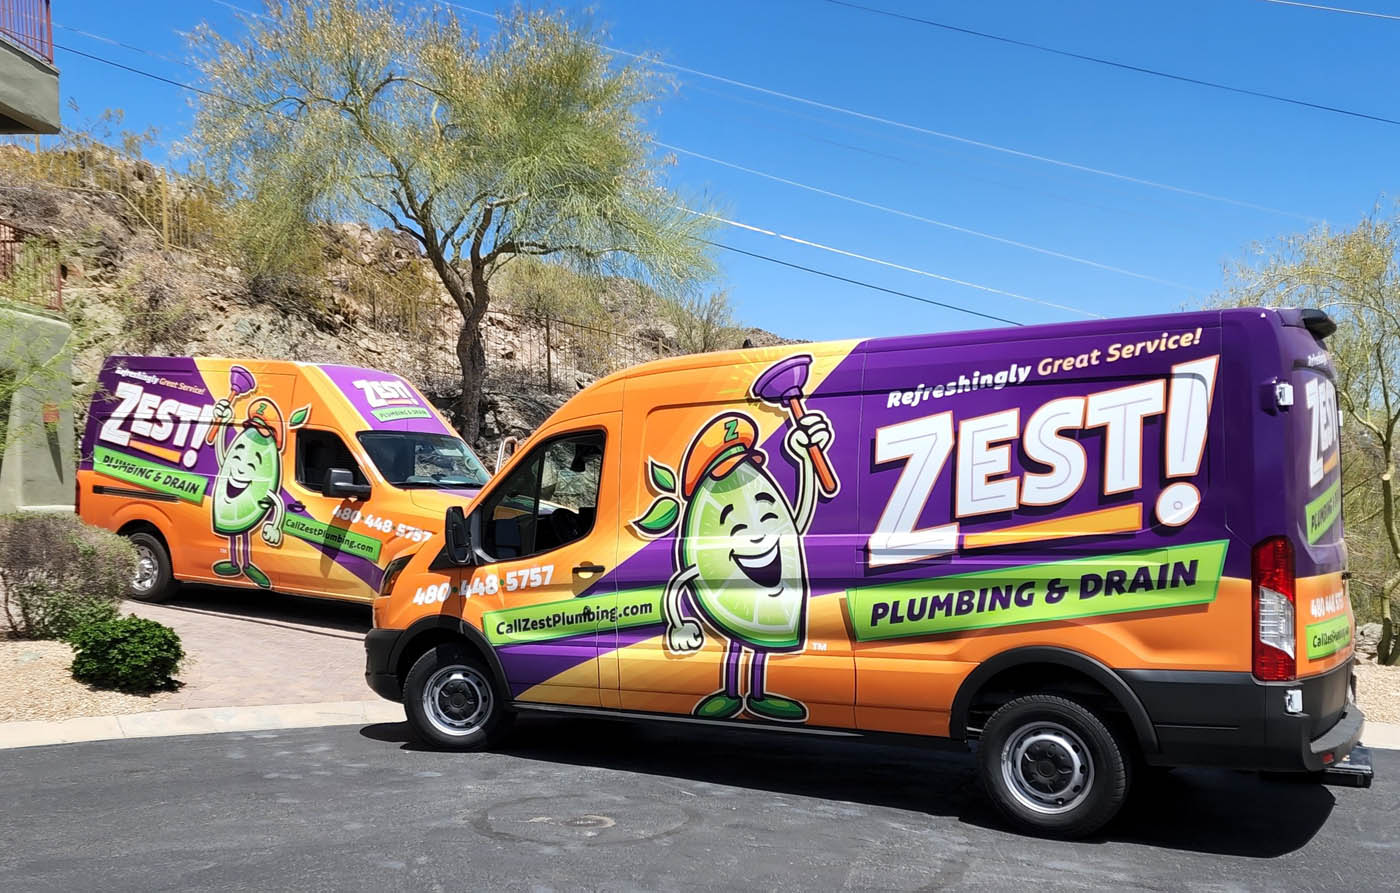 Local Zest Plumbing & Drain plumbing trucks in Phoenix, AZ.